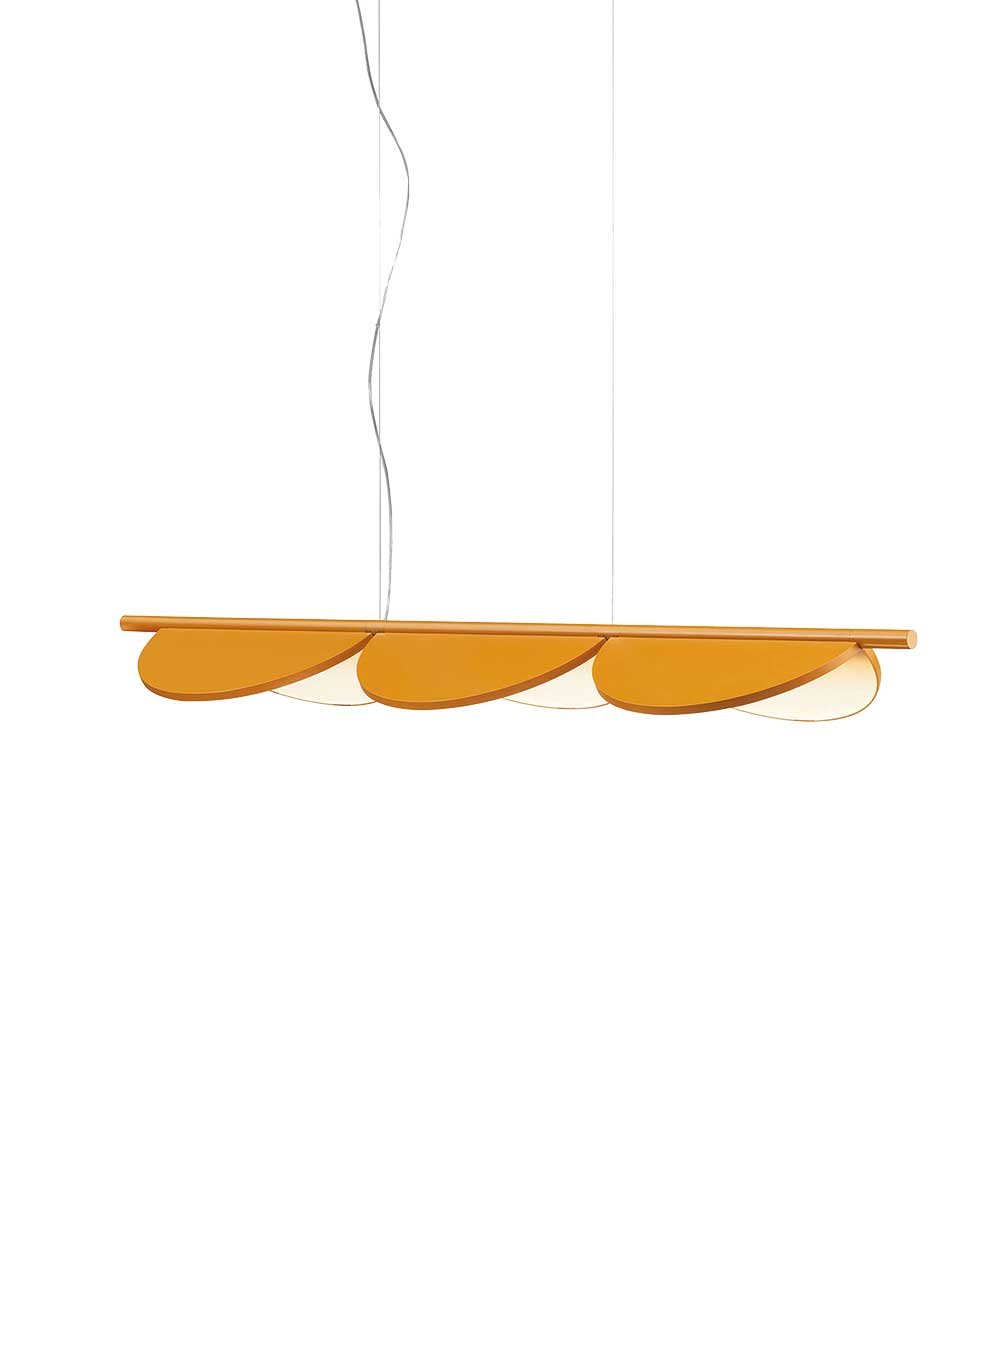 Nicht dimmen, sondern drehen! Designerin Patricia Urquiola weiß einfach, dass ein guter Lampenschirm beweglich sein muss. flos.com